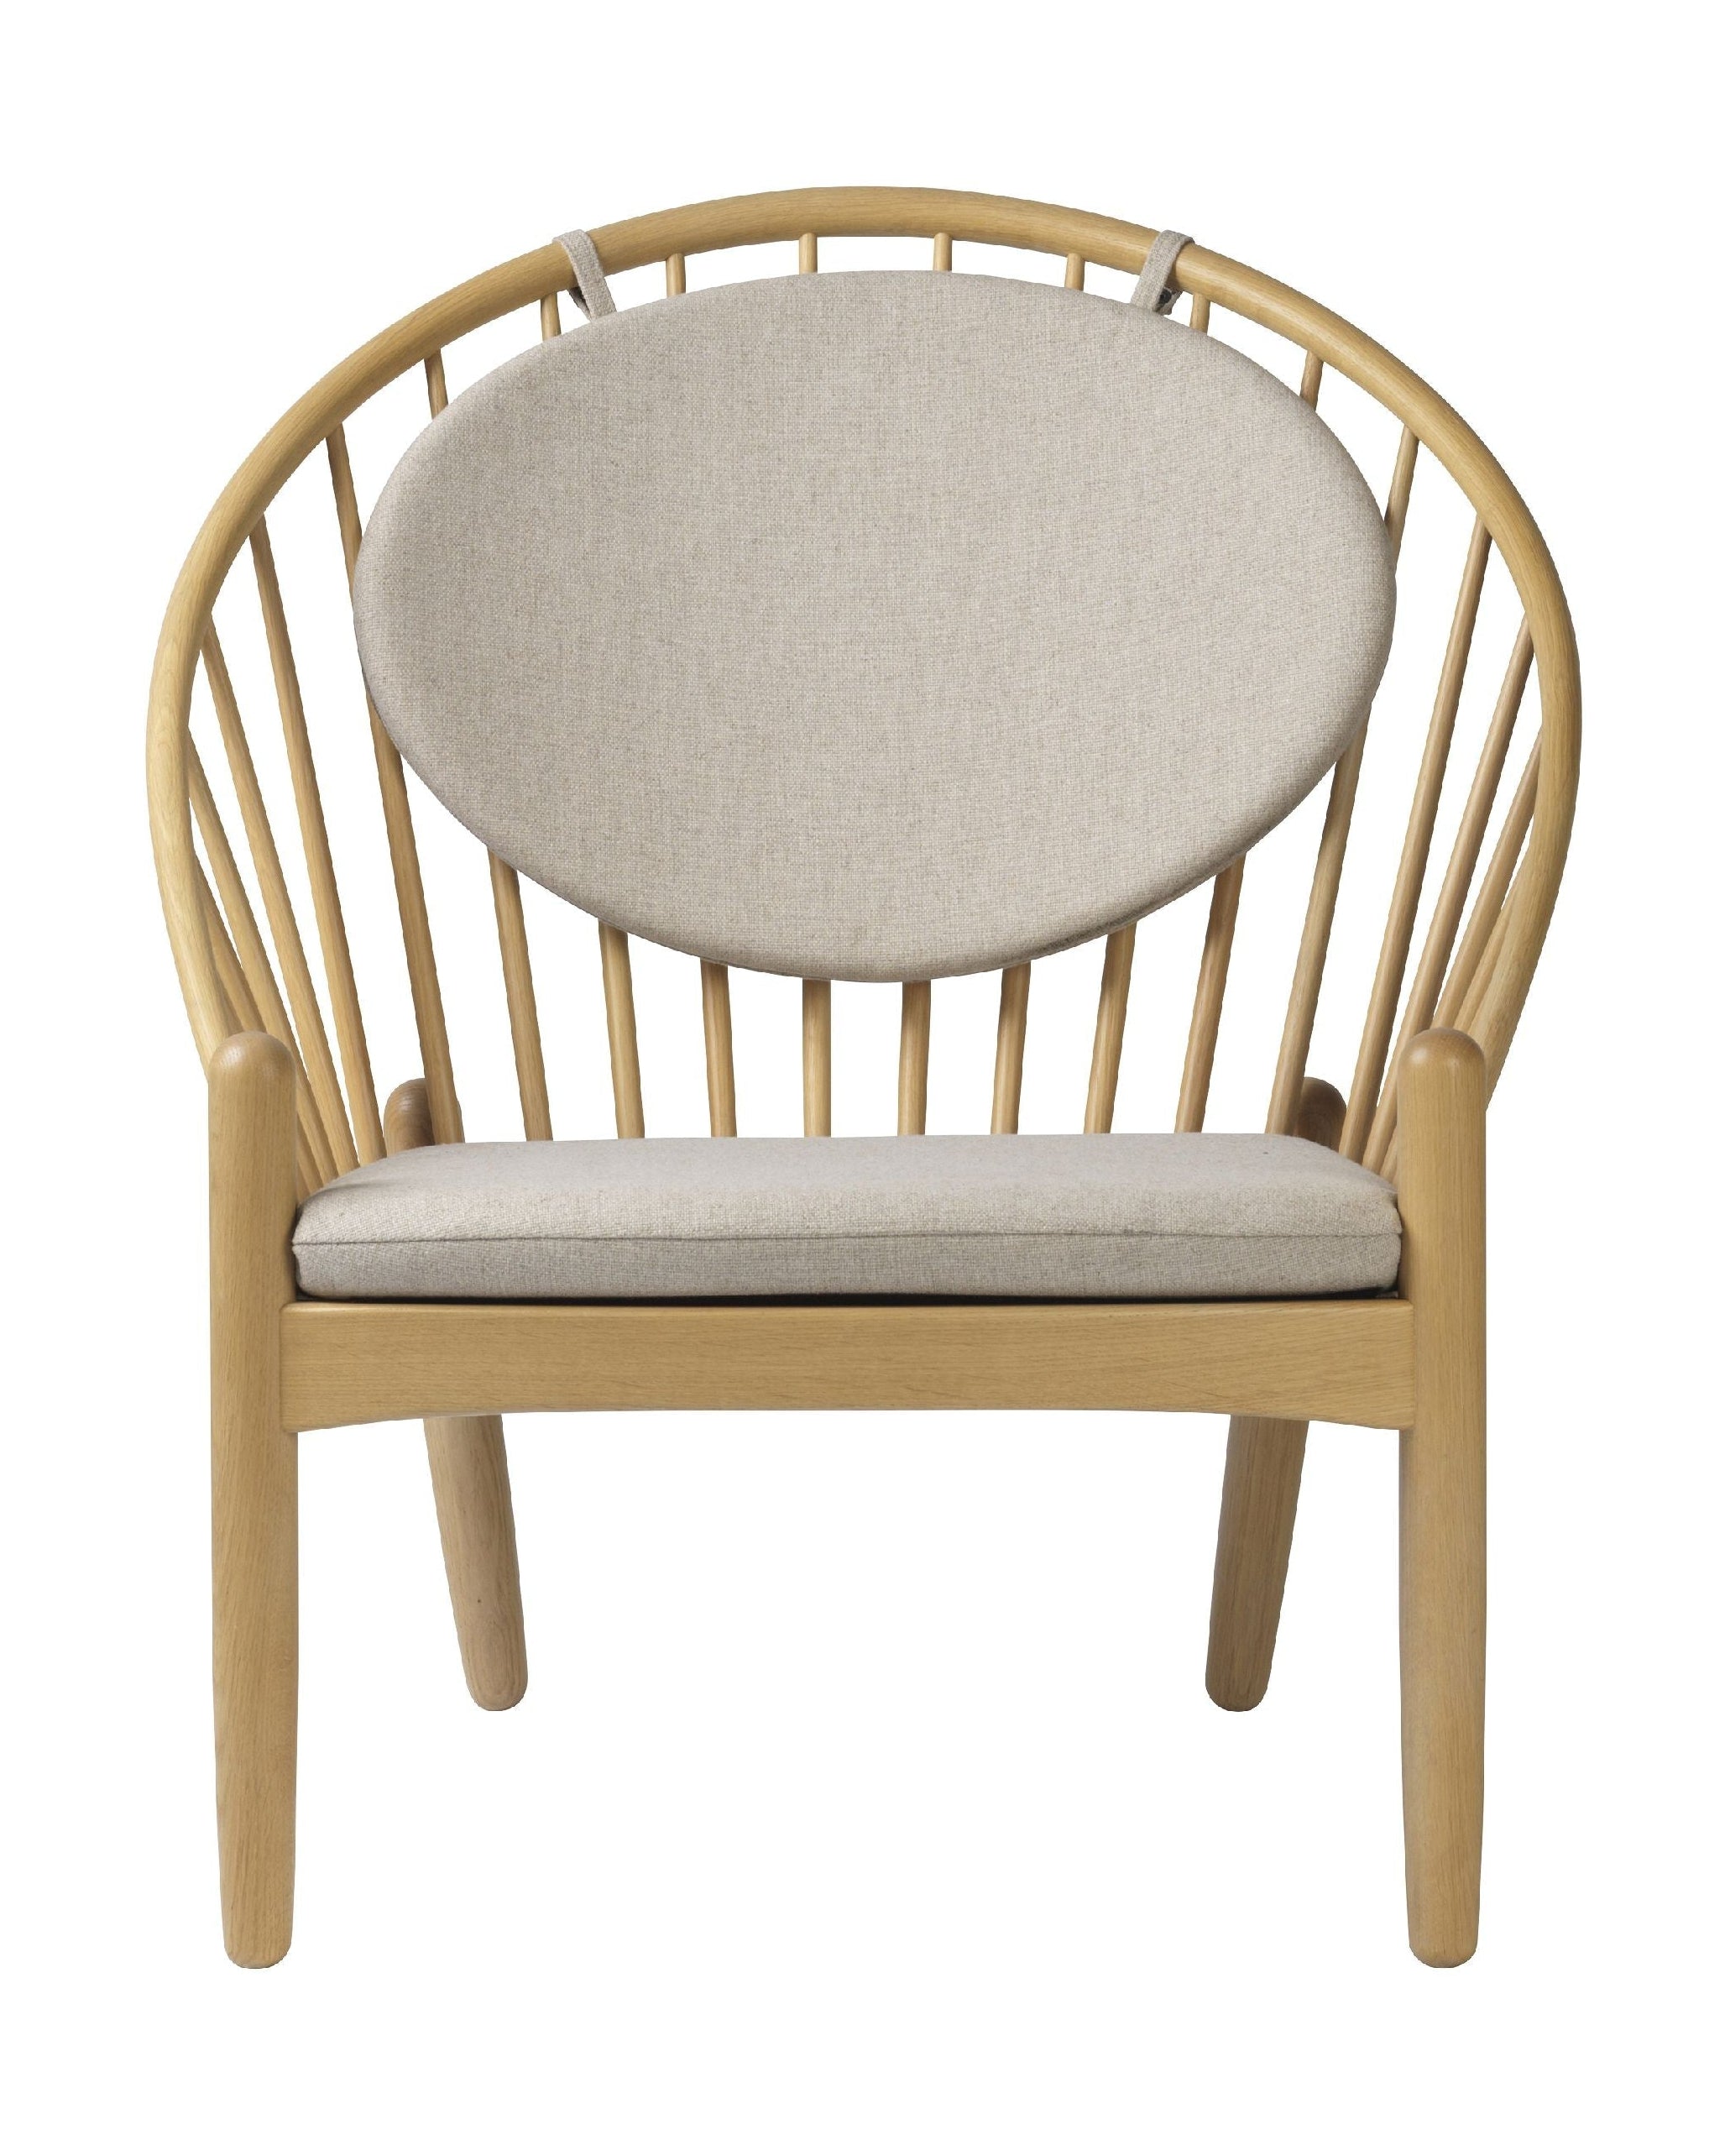 Fdb Møbler J166 Jørna fauteuil, eiken/gelakt beige